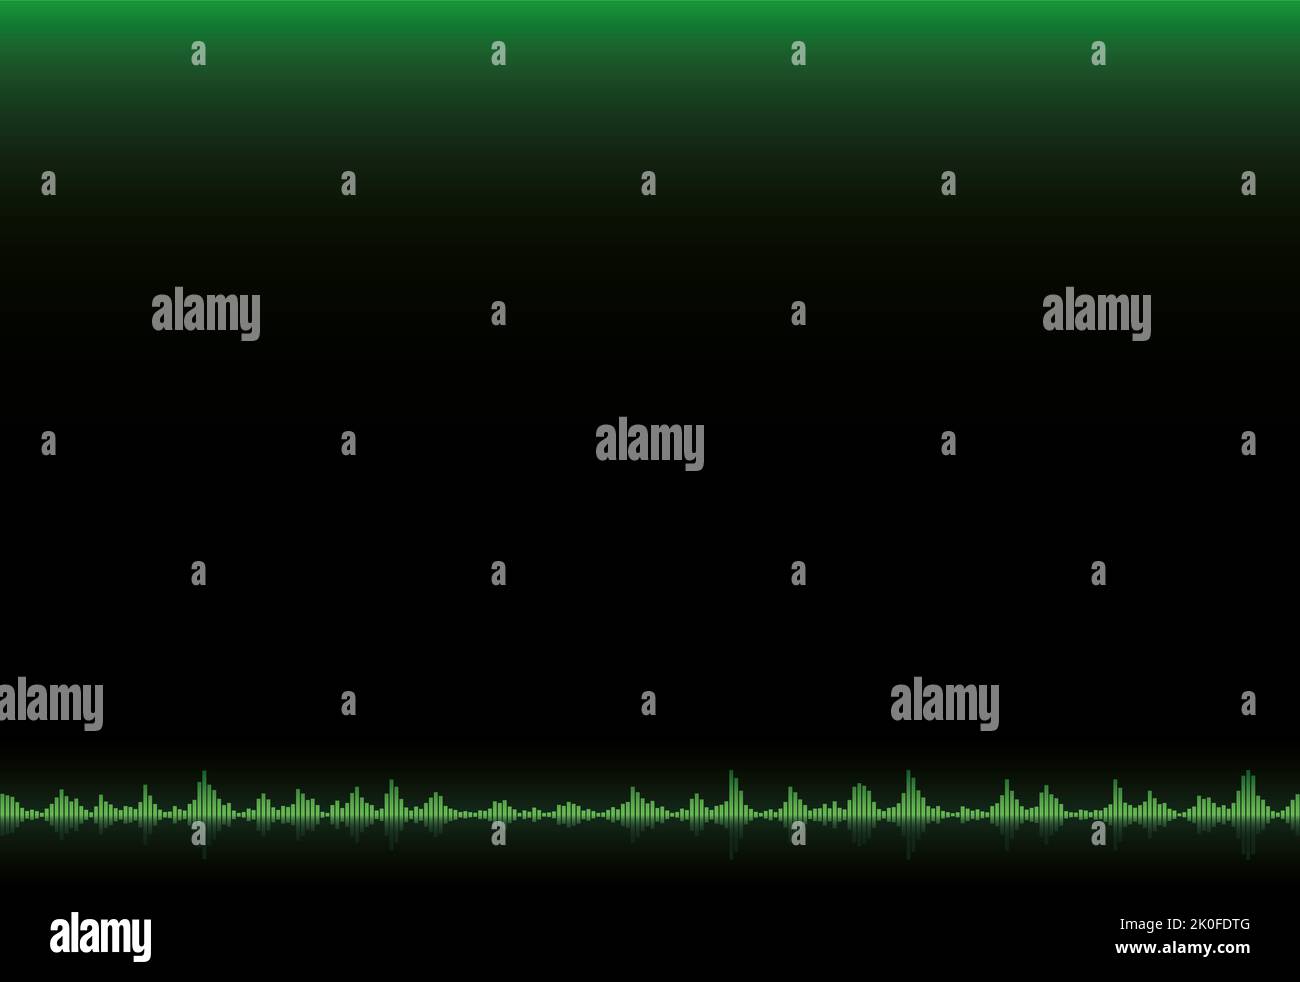 Barras de ecualizador, amplitud de onda sonora verde, onda de nivel de volumen, escala de frecuencia de audio sobre fondo degradado verde y negro. Foto de stock